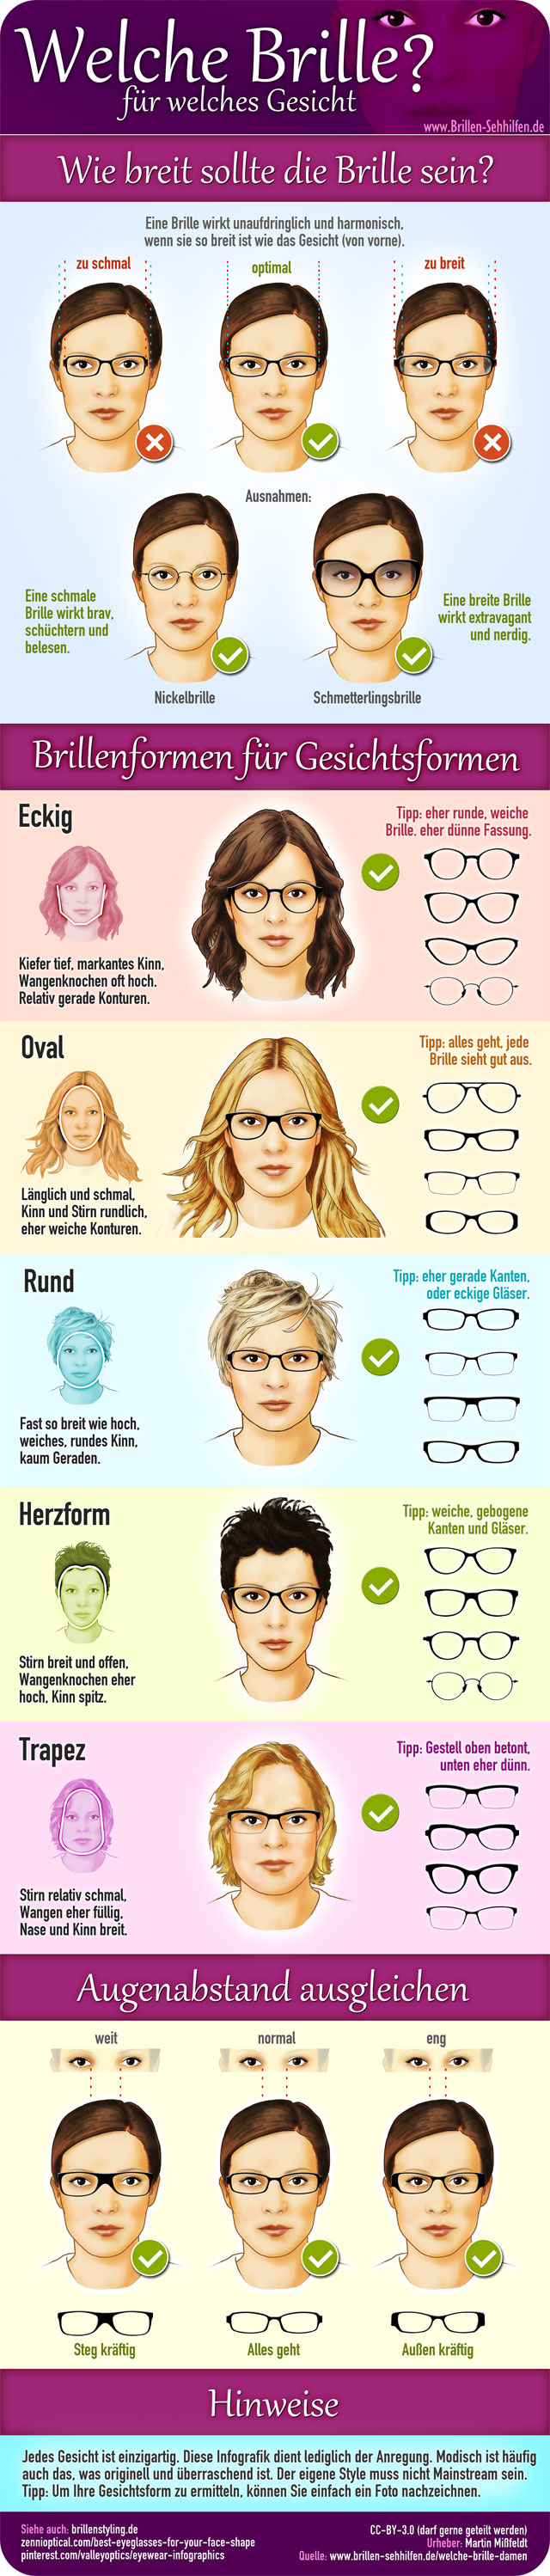 Welche Brille Infografik